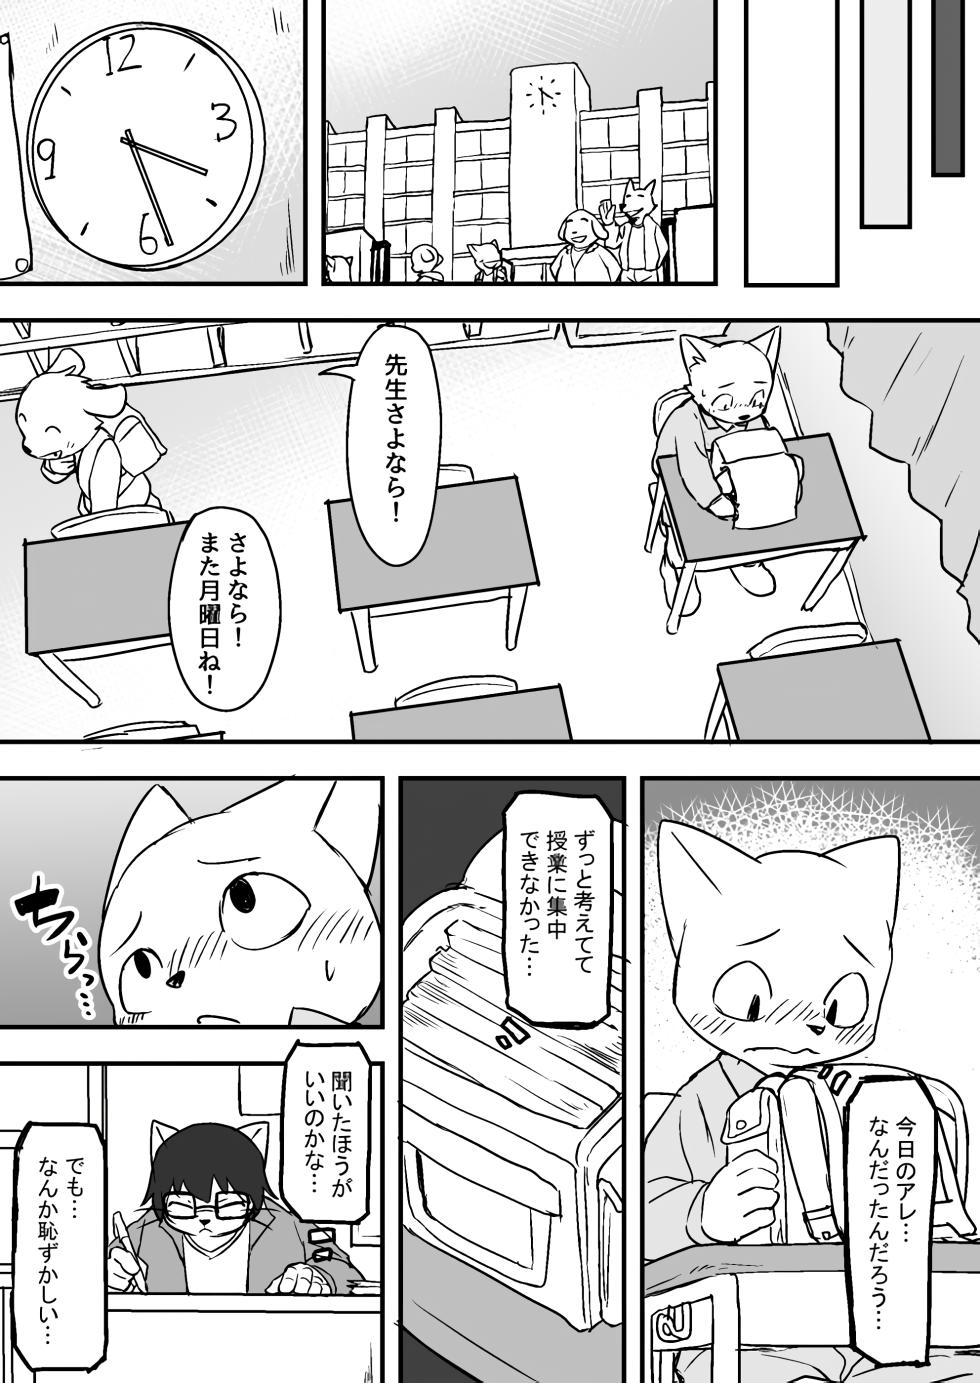 Manmosu Marimo - Sensei Story #1 (Raw) - Page 9